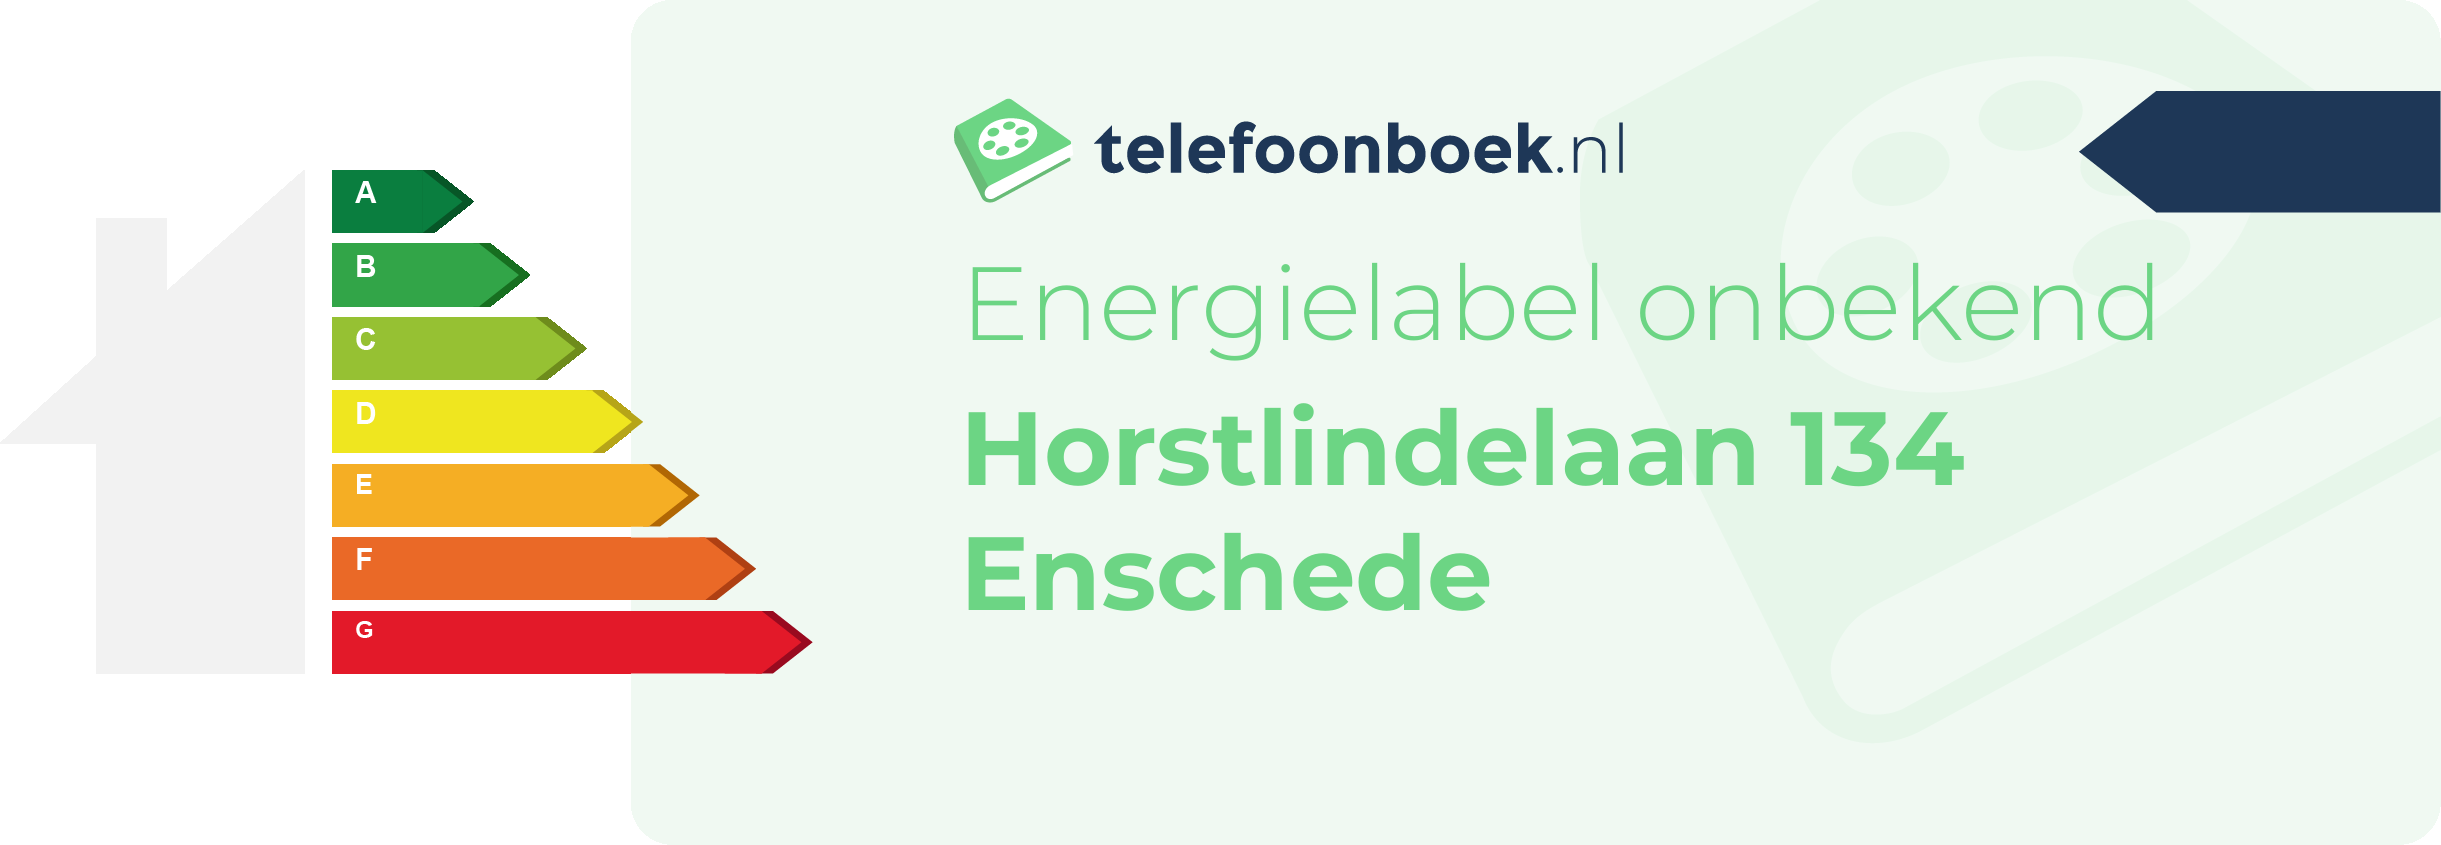 Energielabel Horstlindelaan 134 Enschede